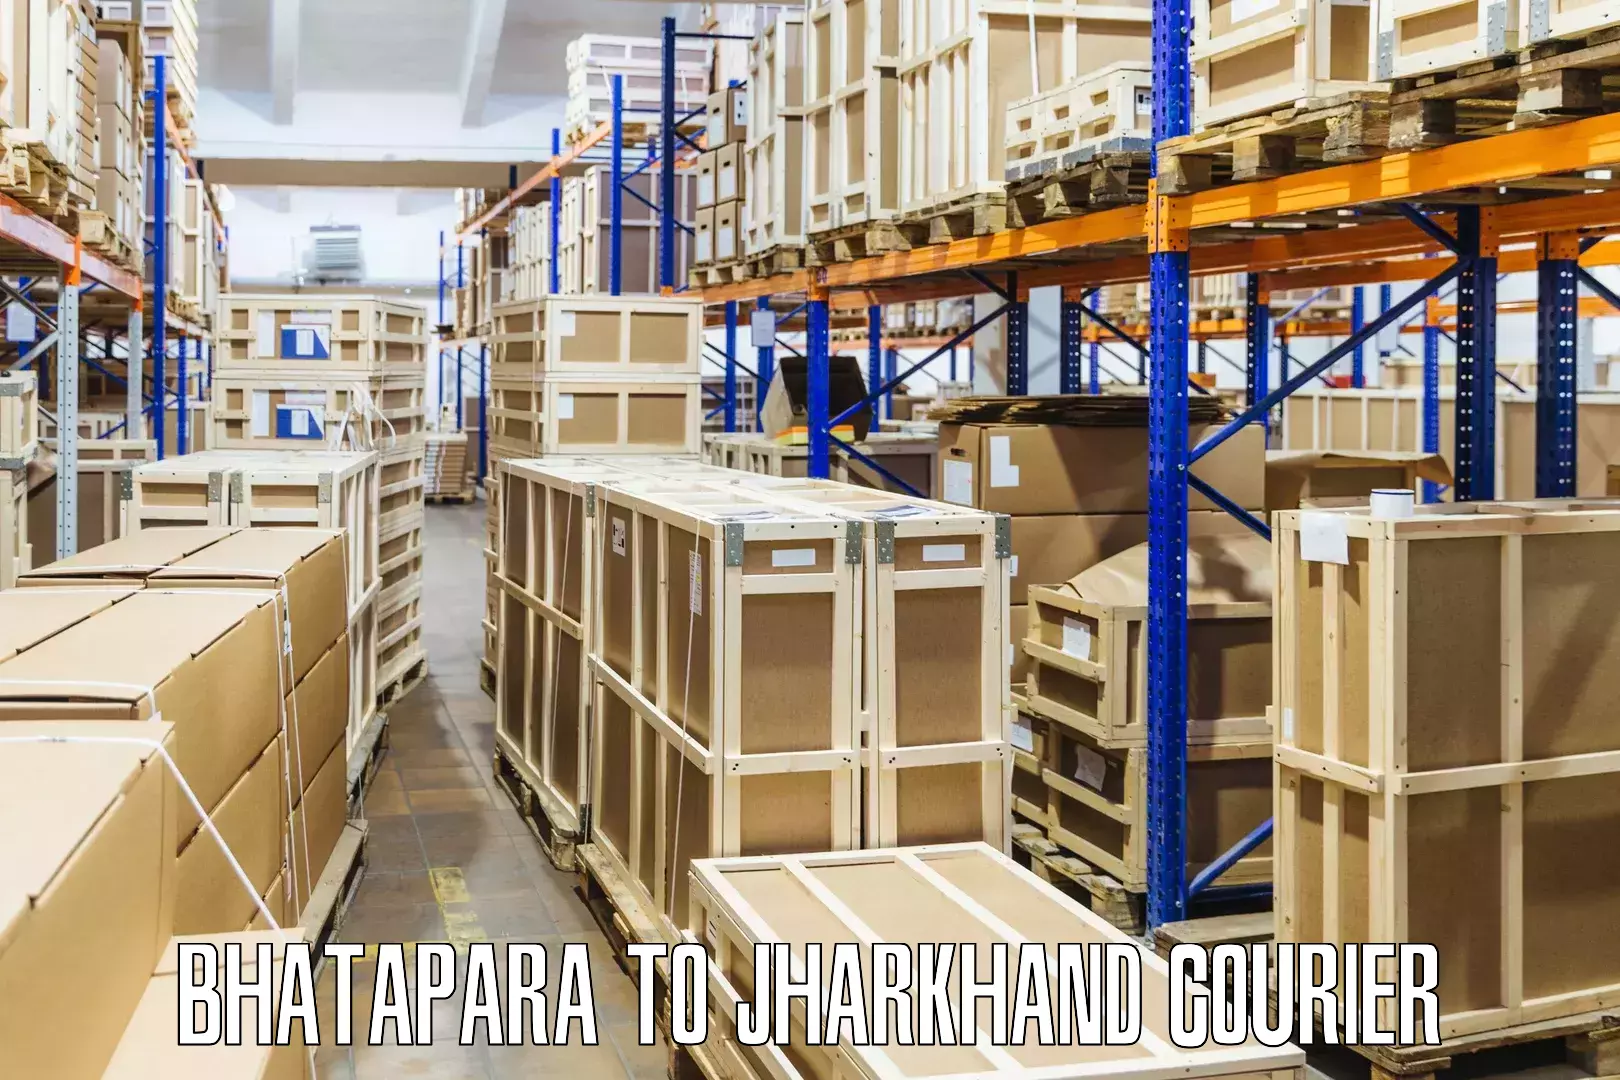 Global freight services Bhatapara to Itkhori